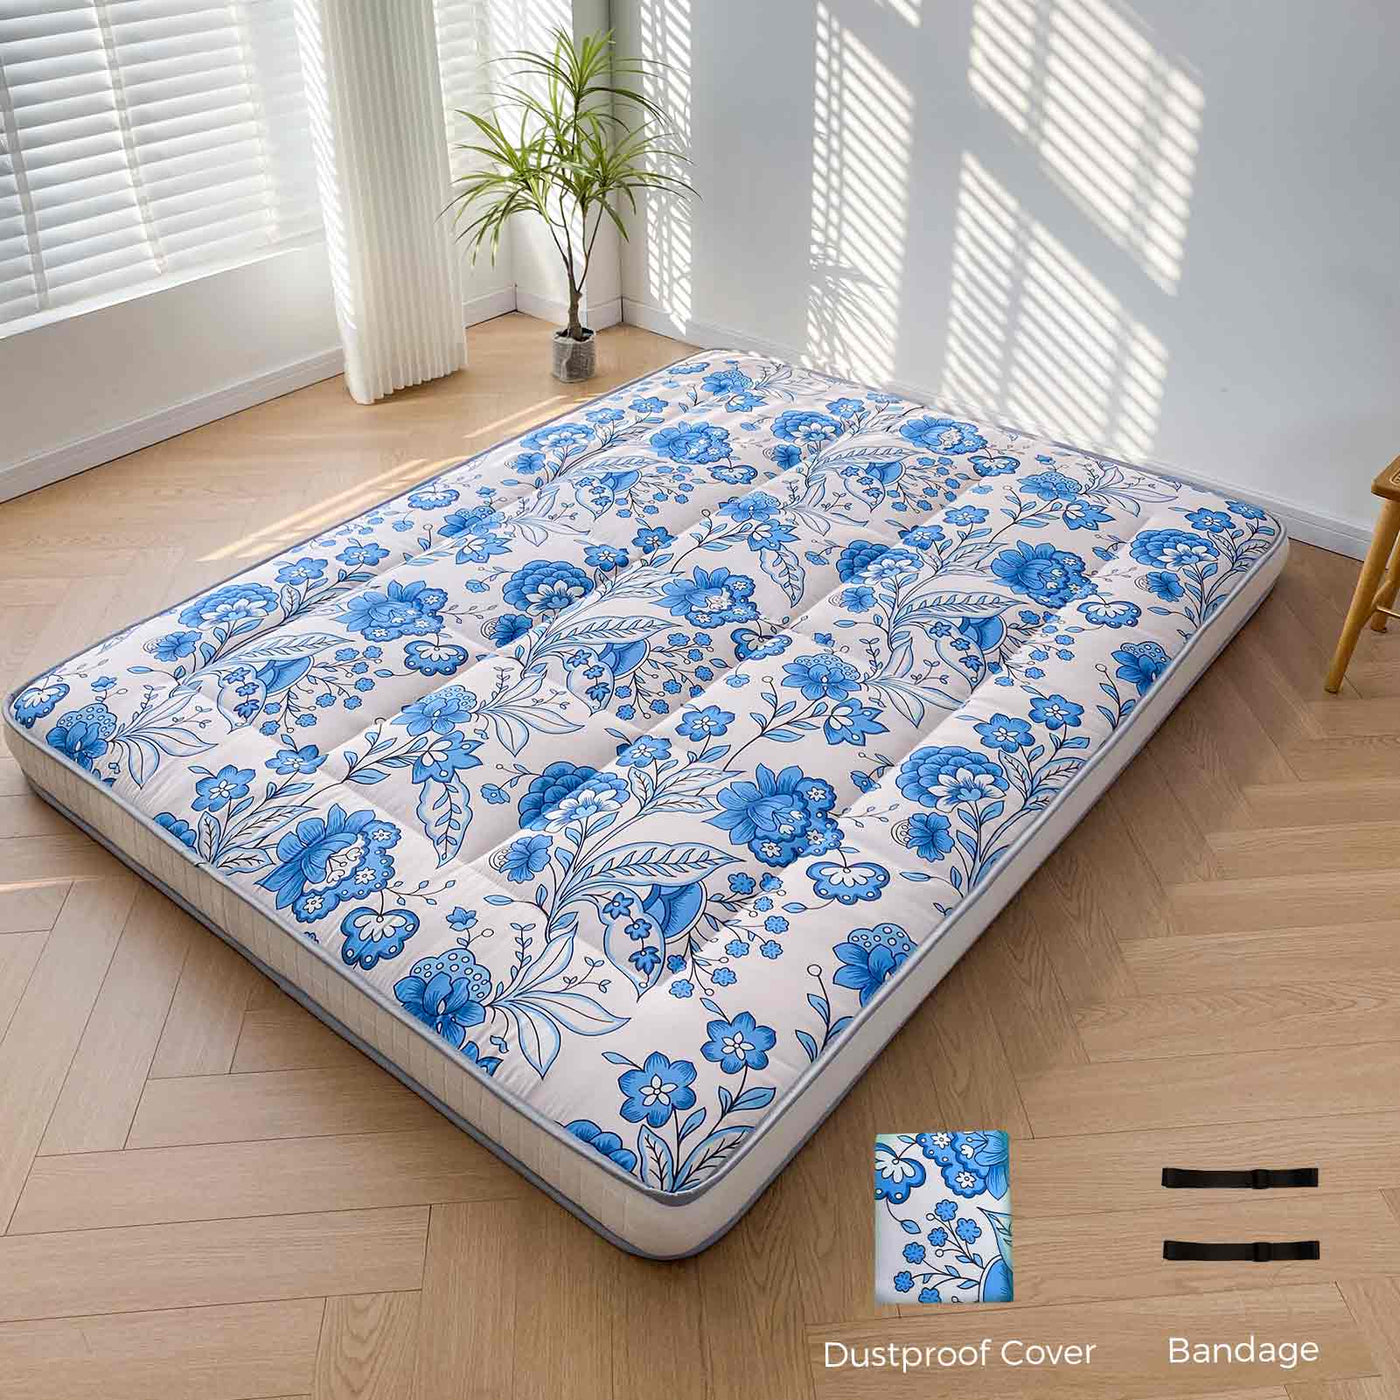 floor mattress#pattern_6inch-blue-flower